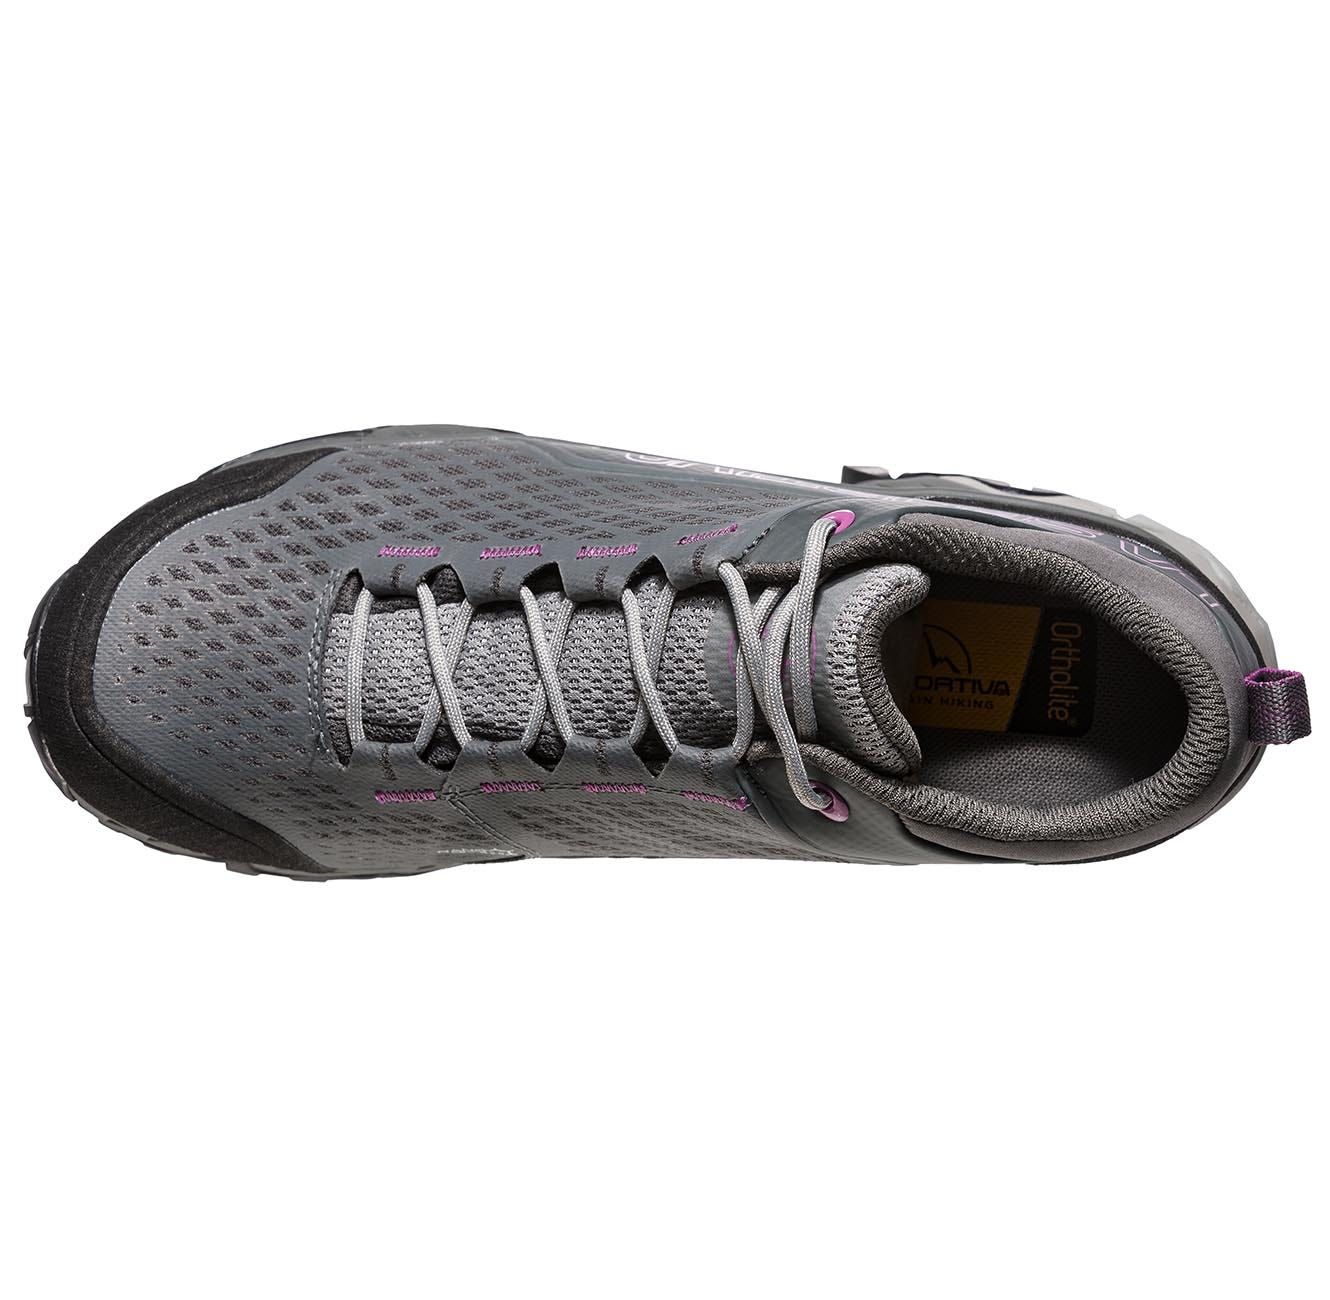 Chaussures randonnées Spire Woman GTX - carbon/purple